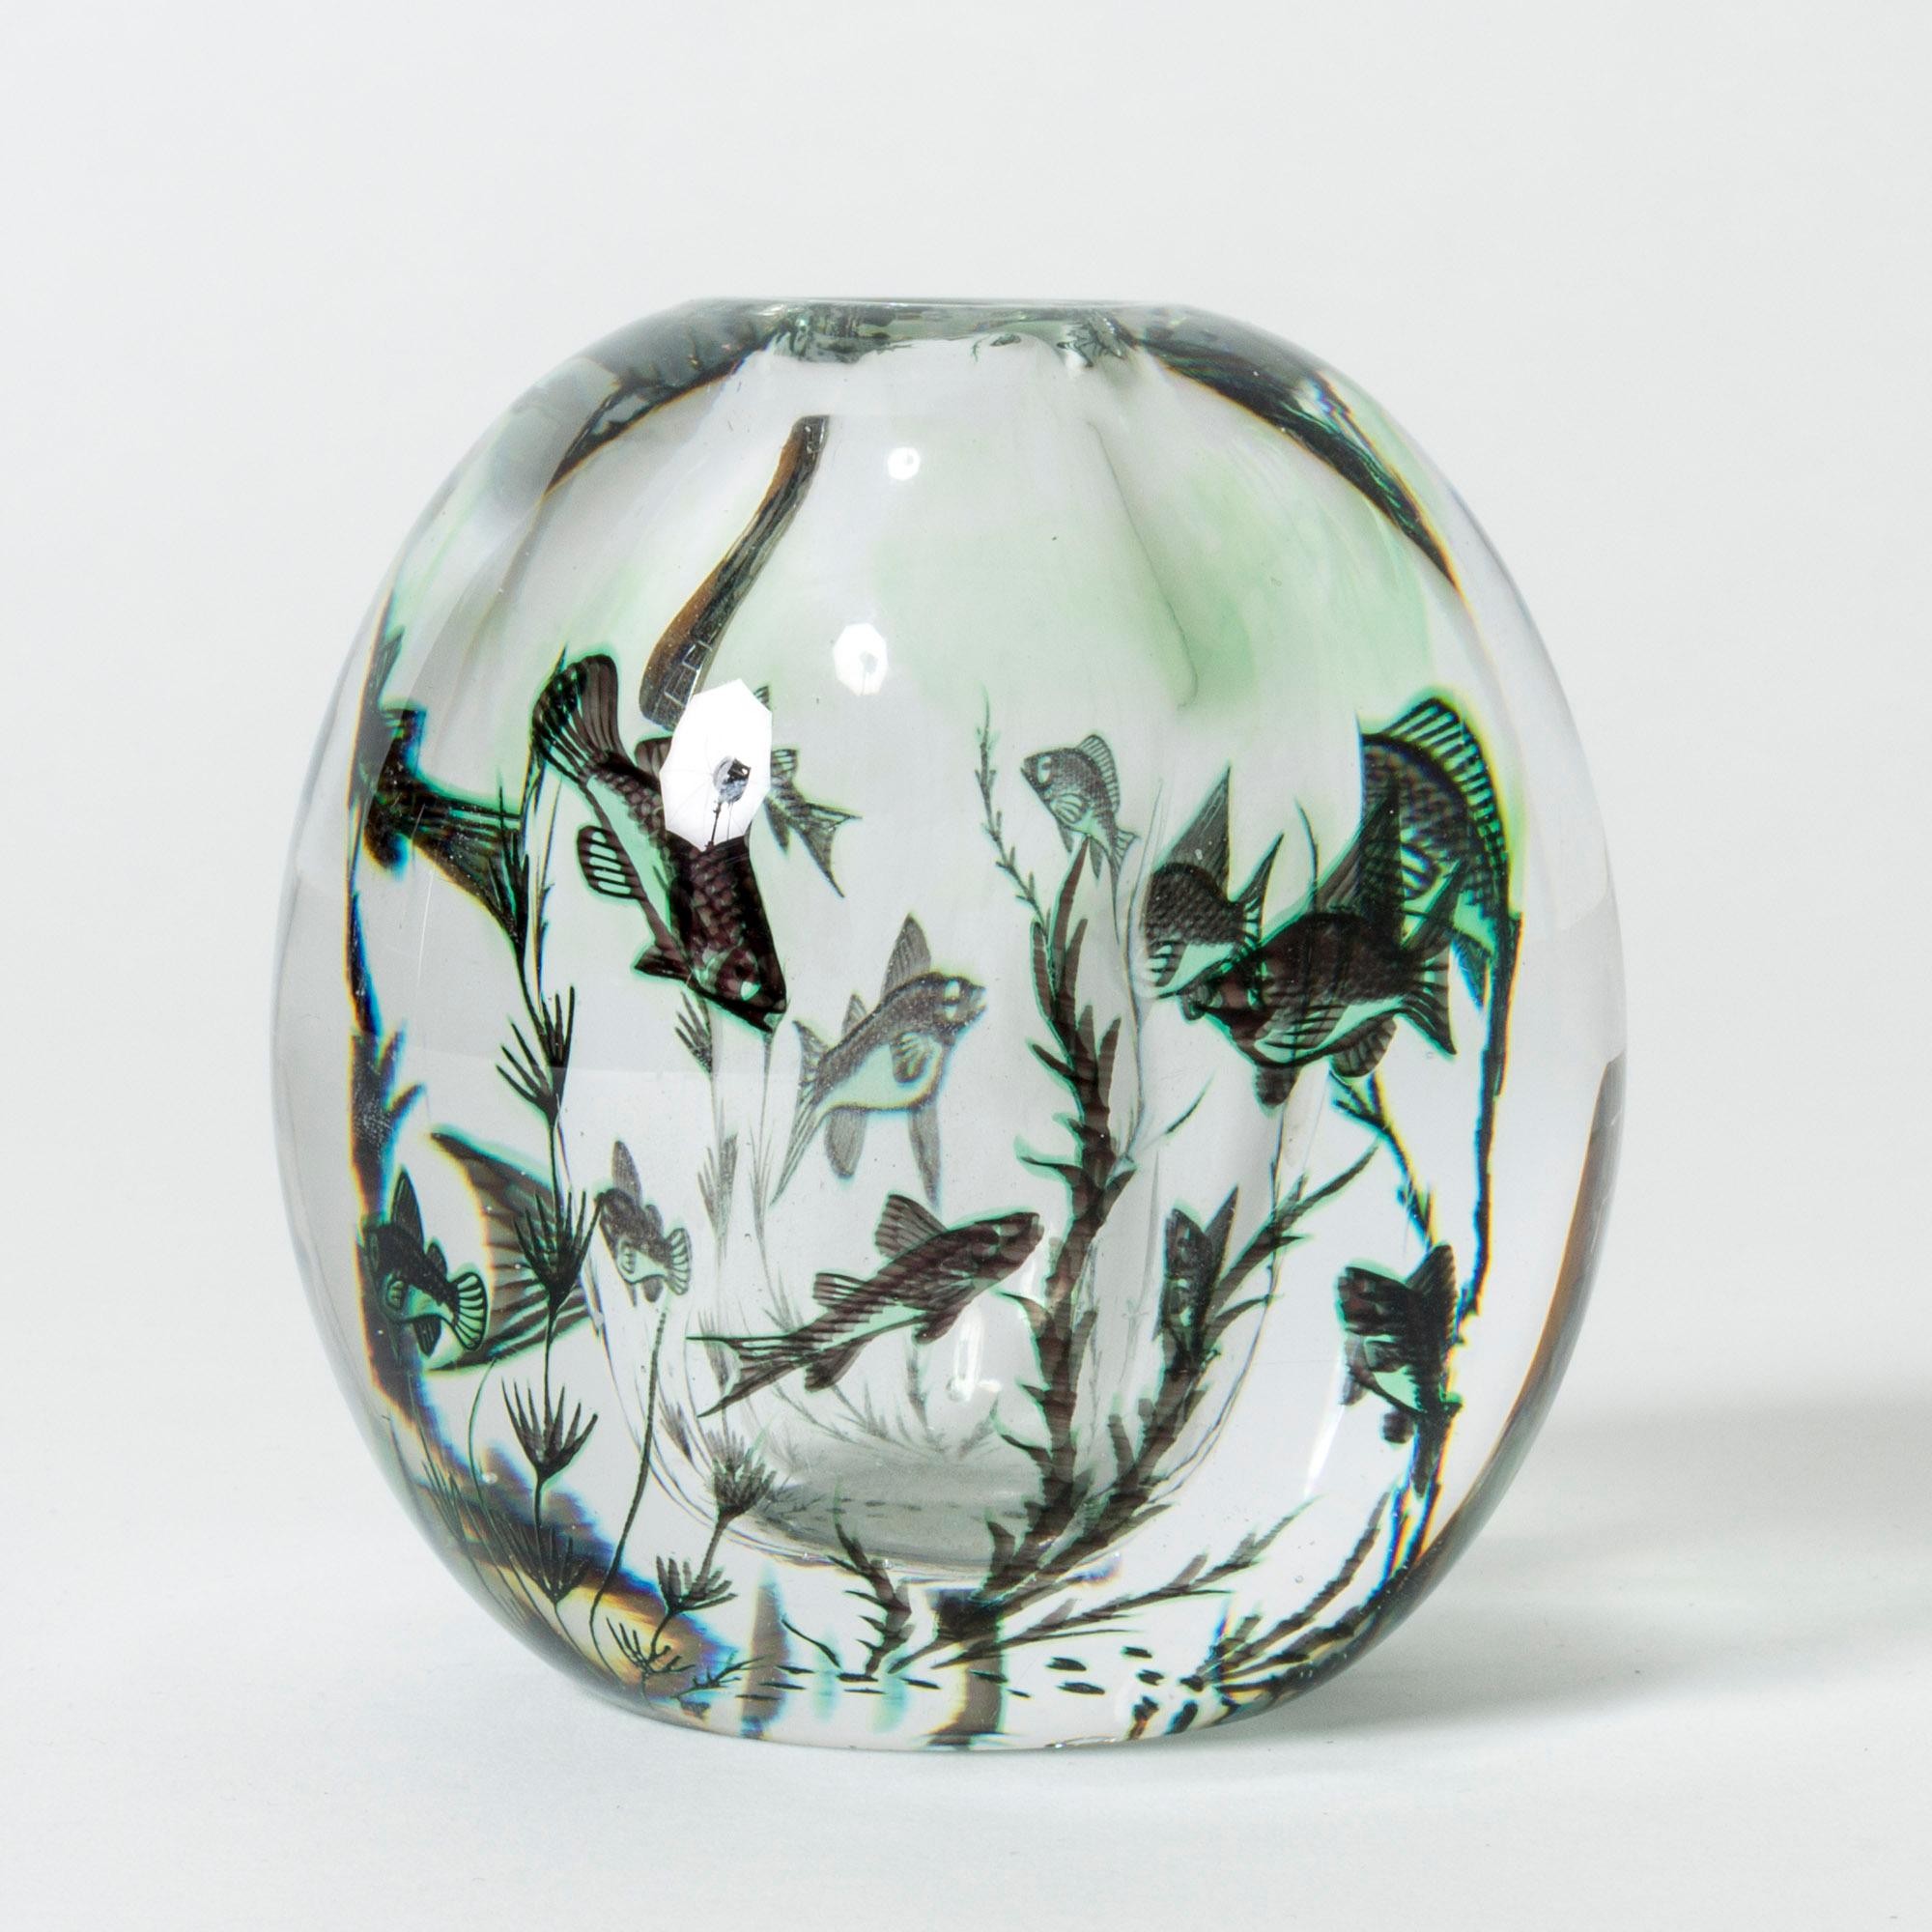 Schöne Graal-Vase von Edward Hald, kristallklar mit grünen Nuancen. Schönes Unterwassermotiv mit Fischen, bei dem die Glasschichten einen lebendigen, wässrigen Effekt erzeugen.